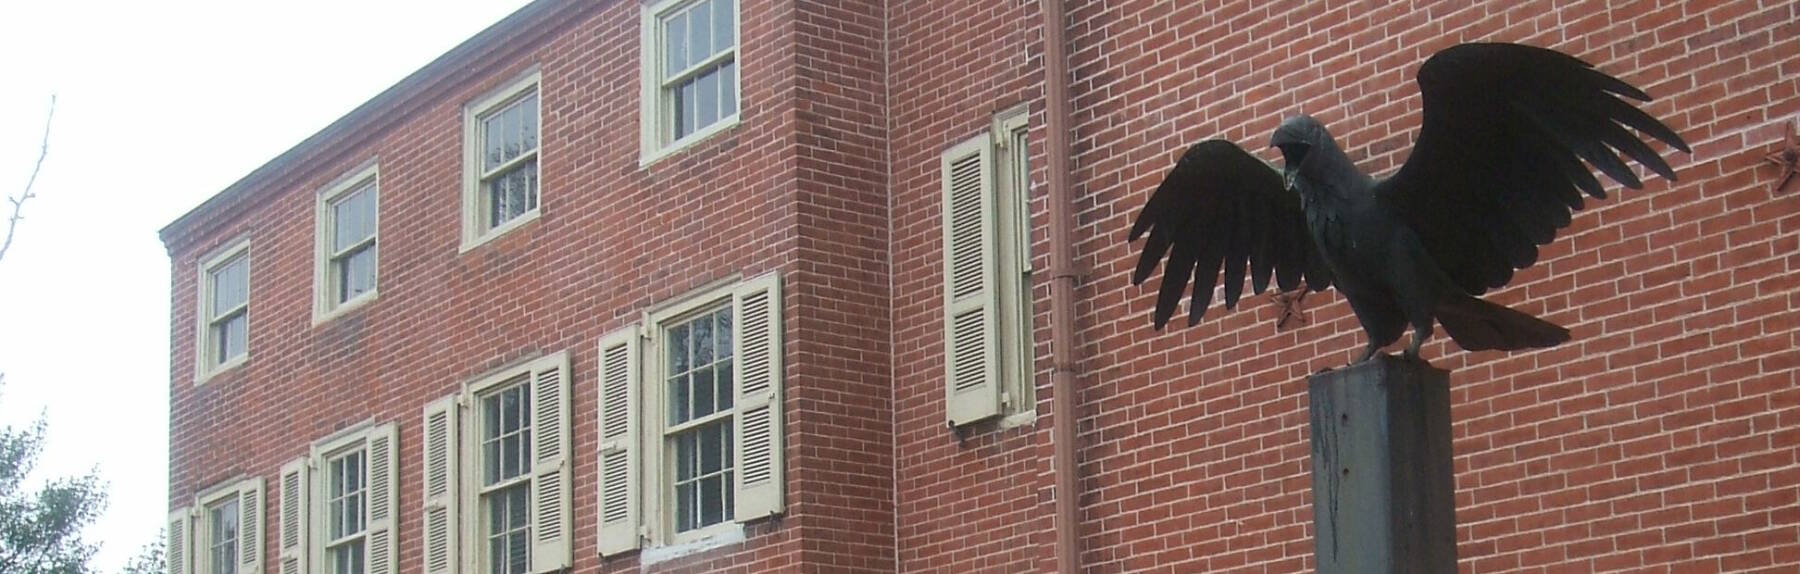 Raven statue outside Edgar Allan Poe's home in Philadelphia.